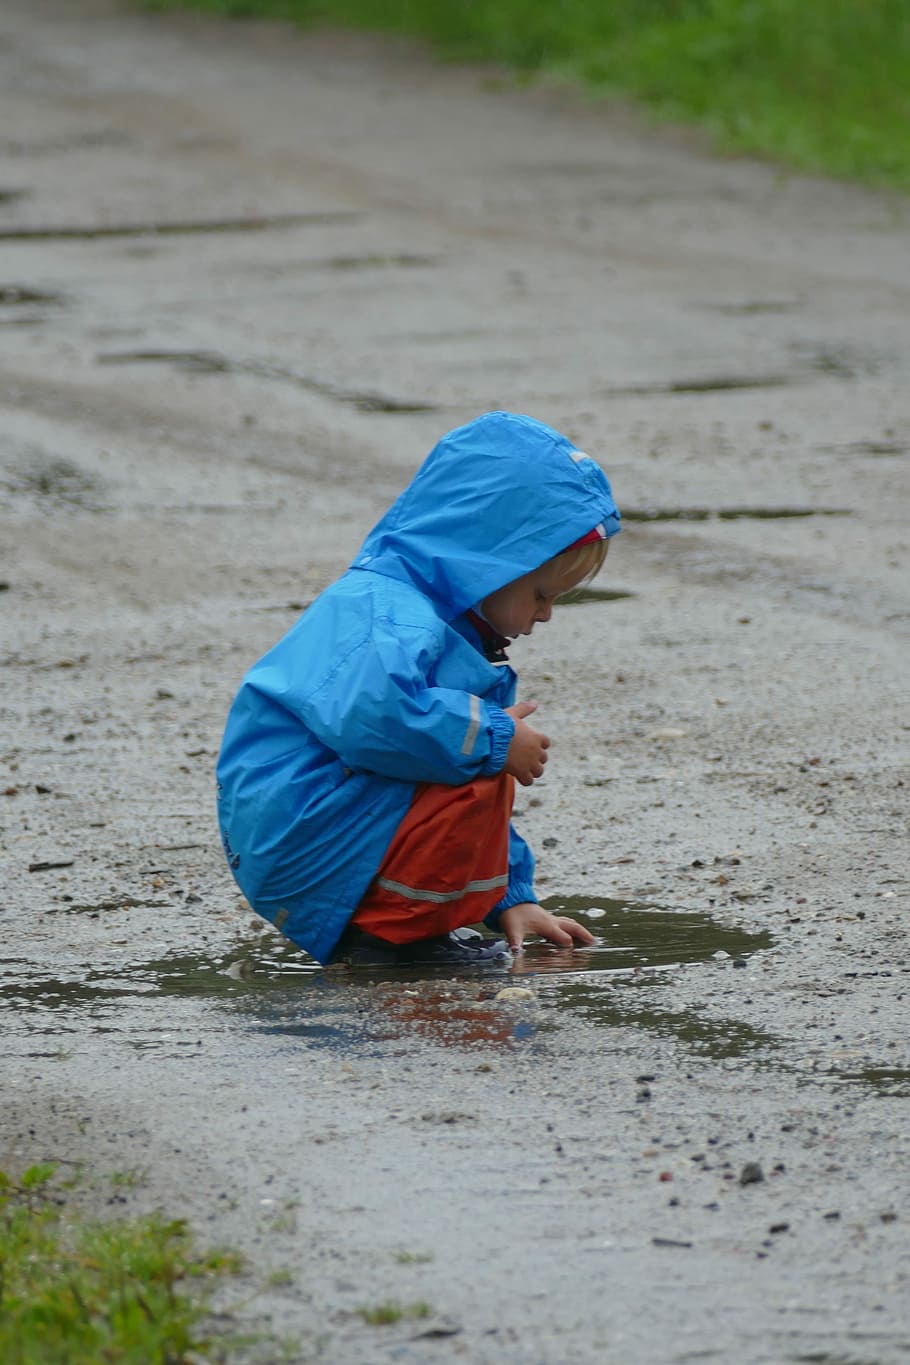 Crianças brincando, poça, chuva, infância, apenas um menino, meninos, uma pessoa, comprimento total, areia, criança